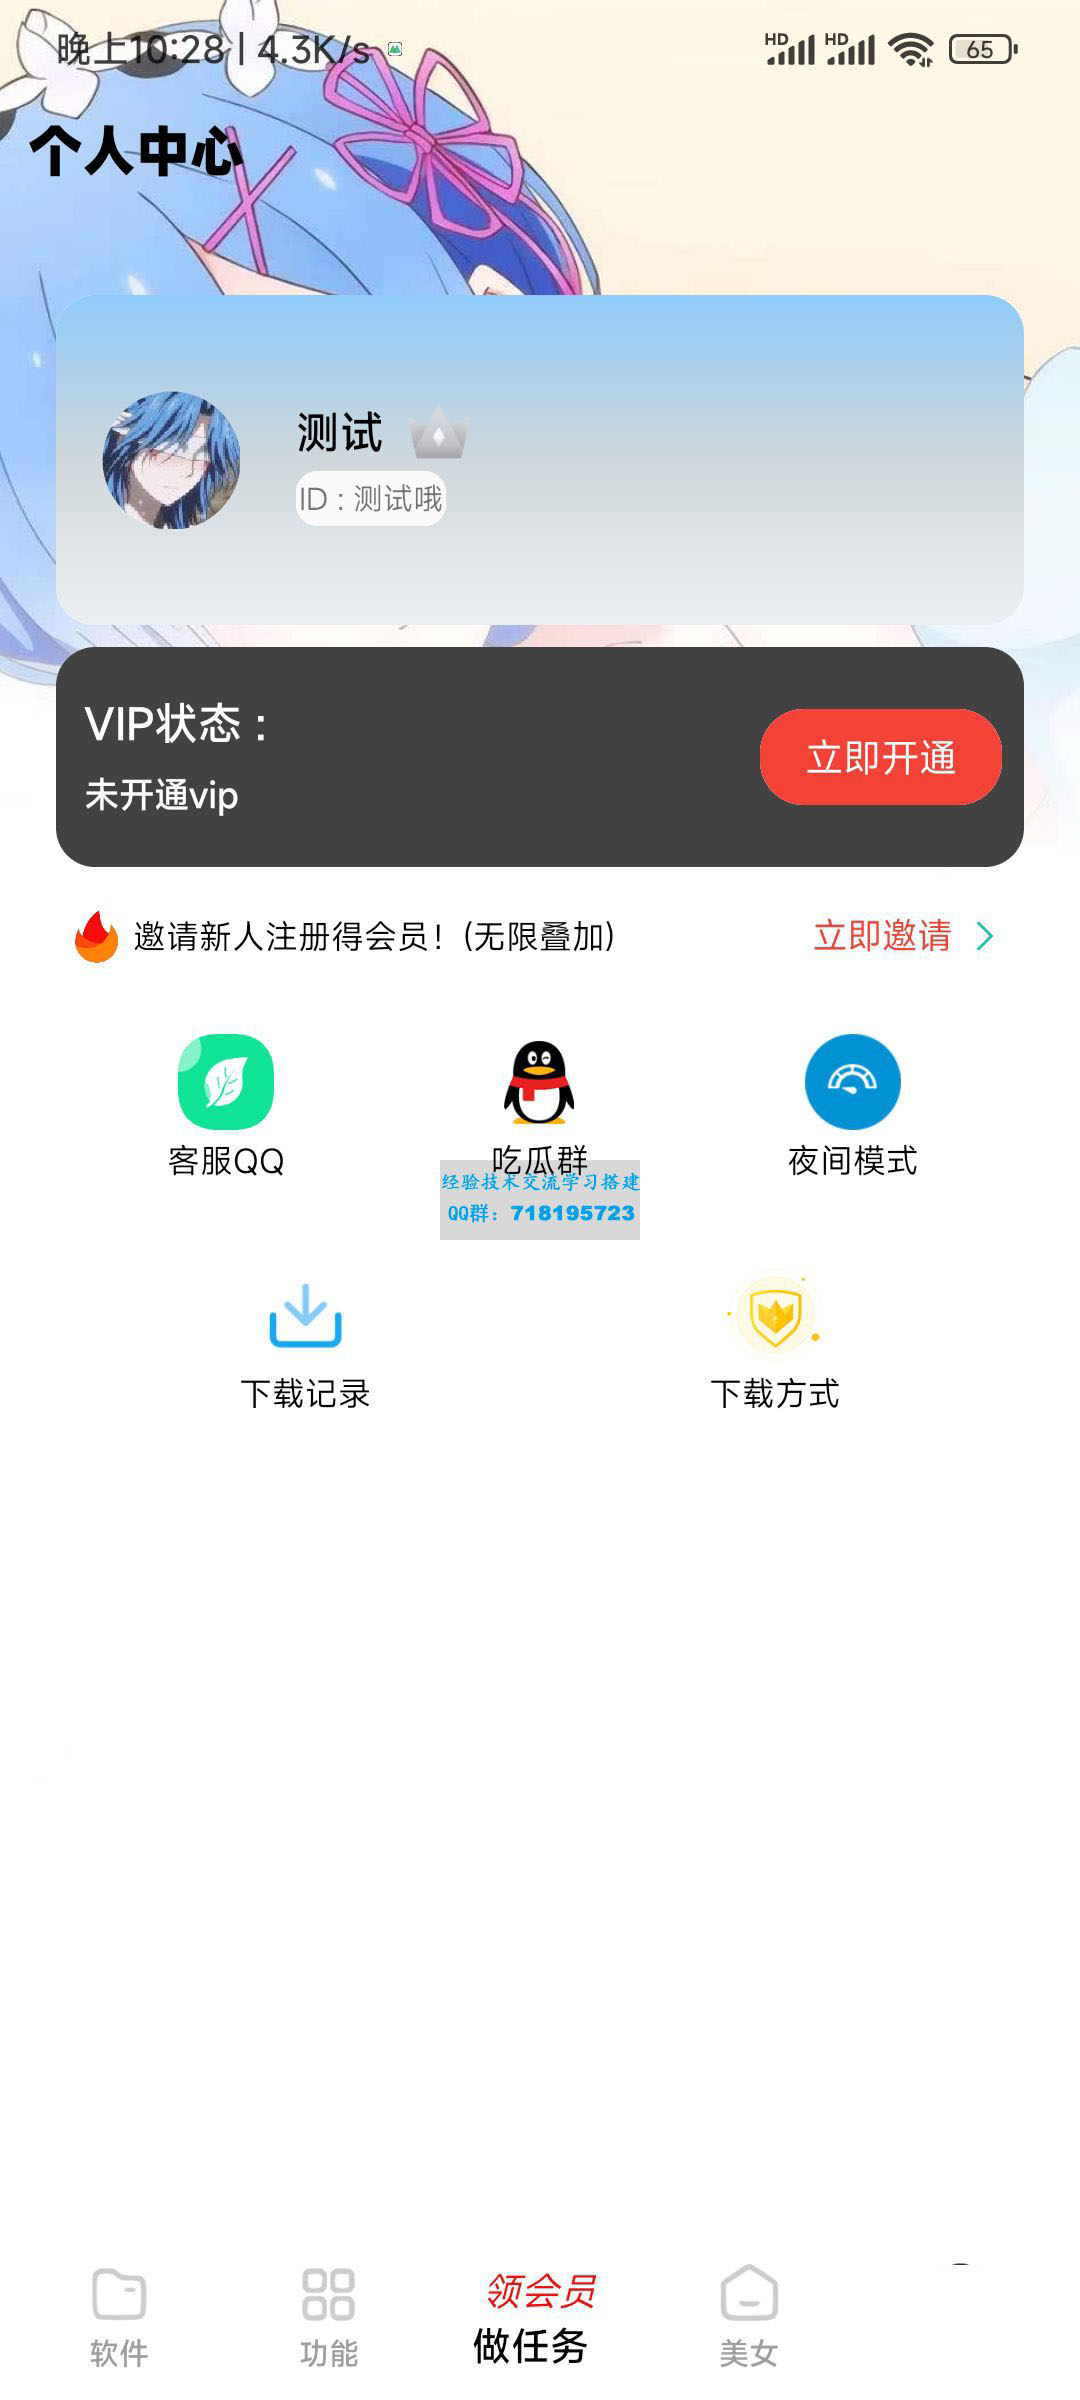     小丫软件库最新开源app源码+后端源码
